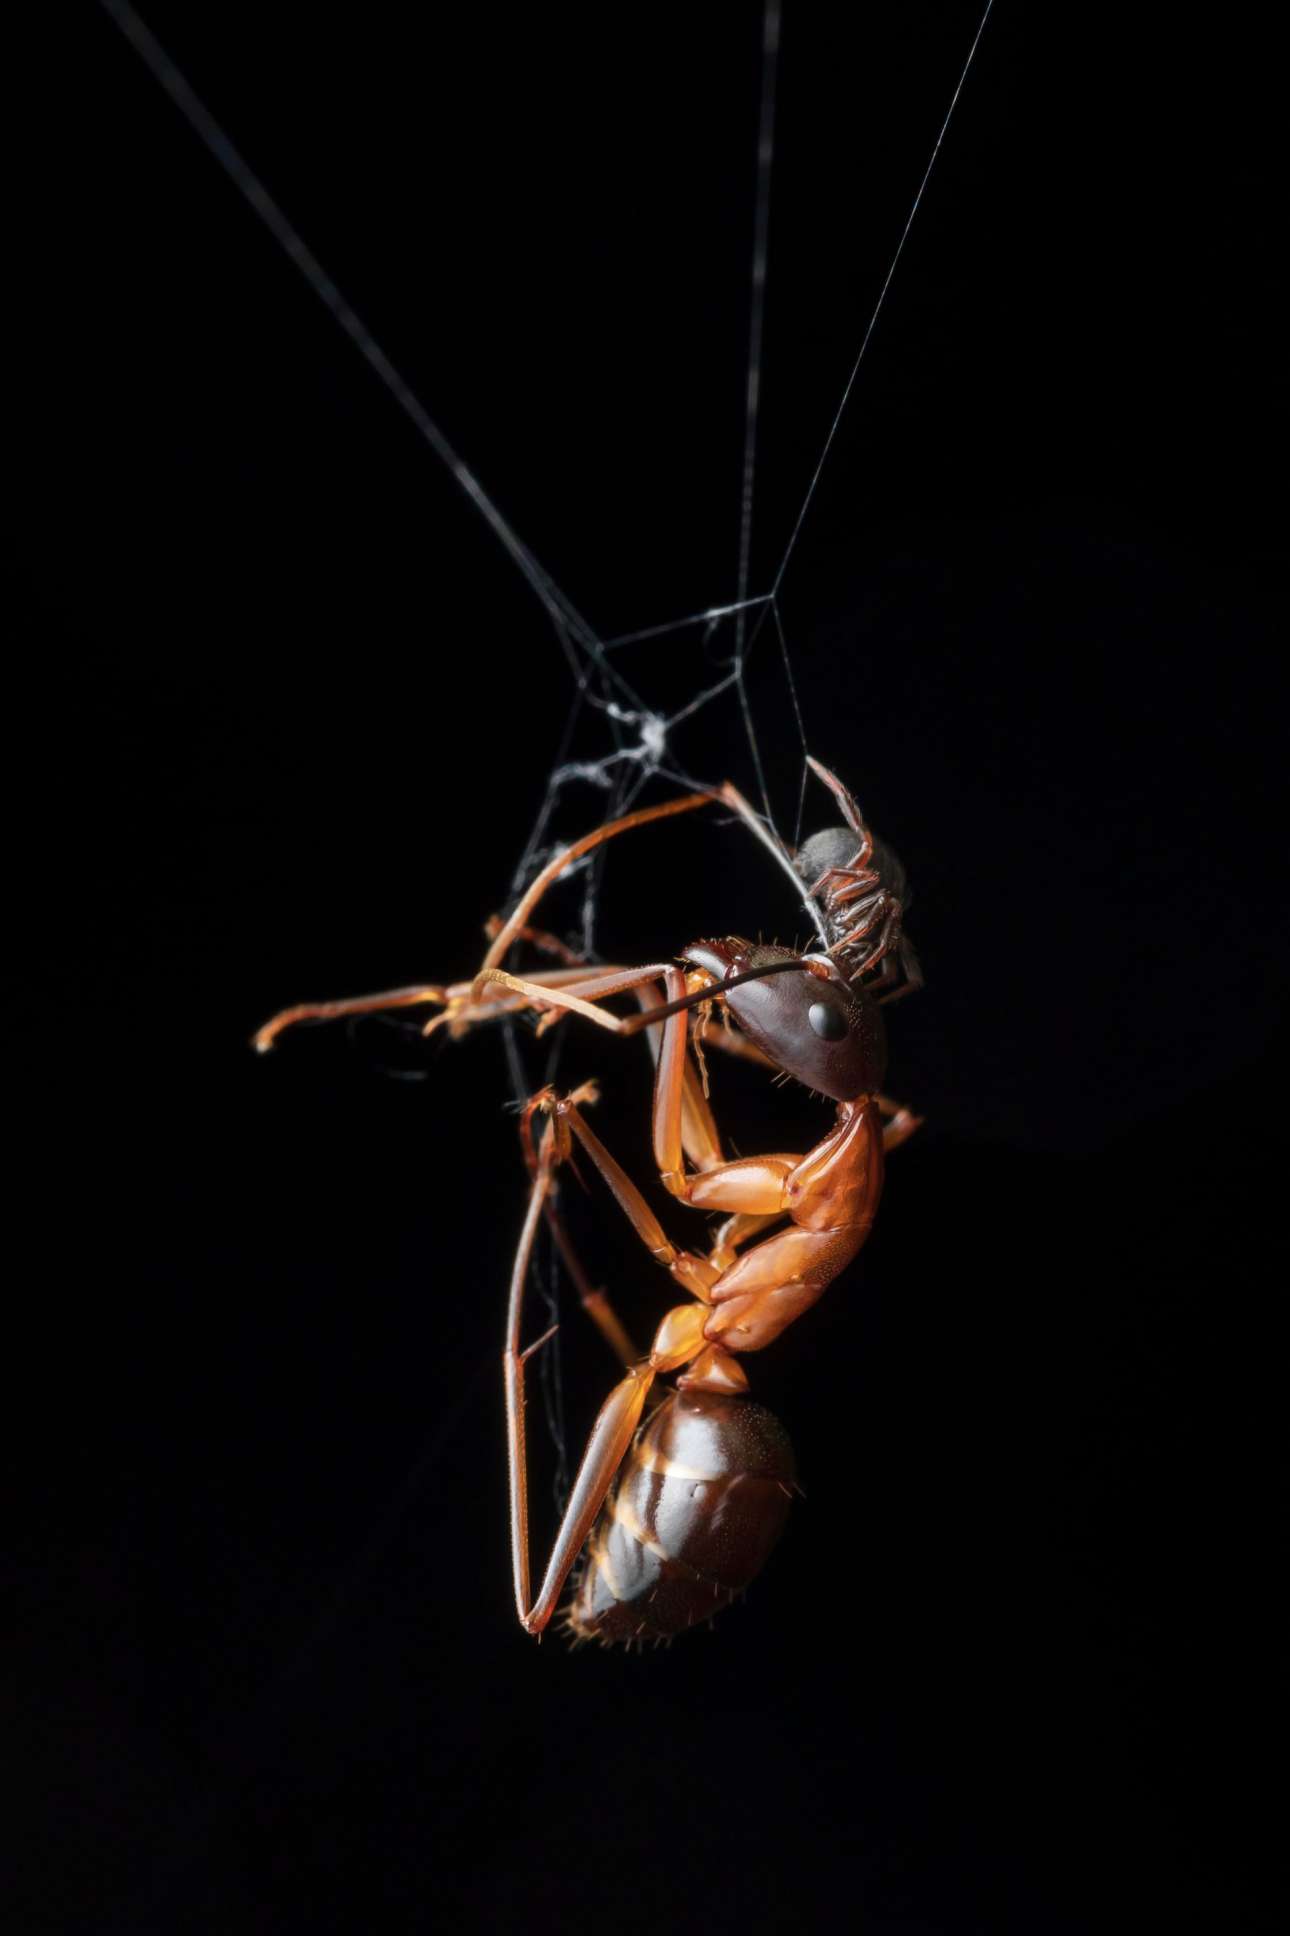 Δηλητηριώδης αράχνη ετοιμάζεται για το γεύμα της, ένα μυρμήγκι πολλαπλάσιου μεγέθους που έχει πιαστεί στον ιστό της